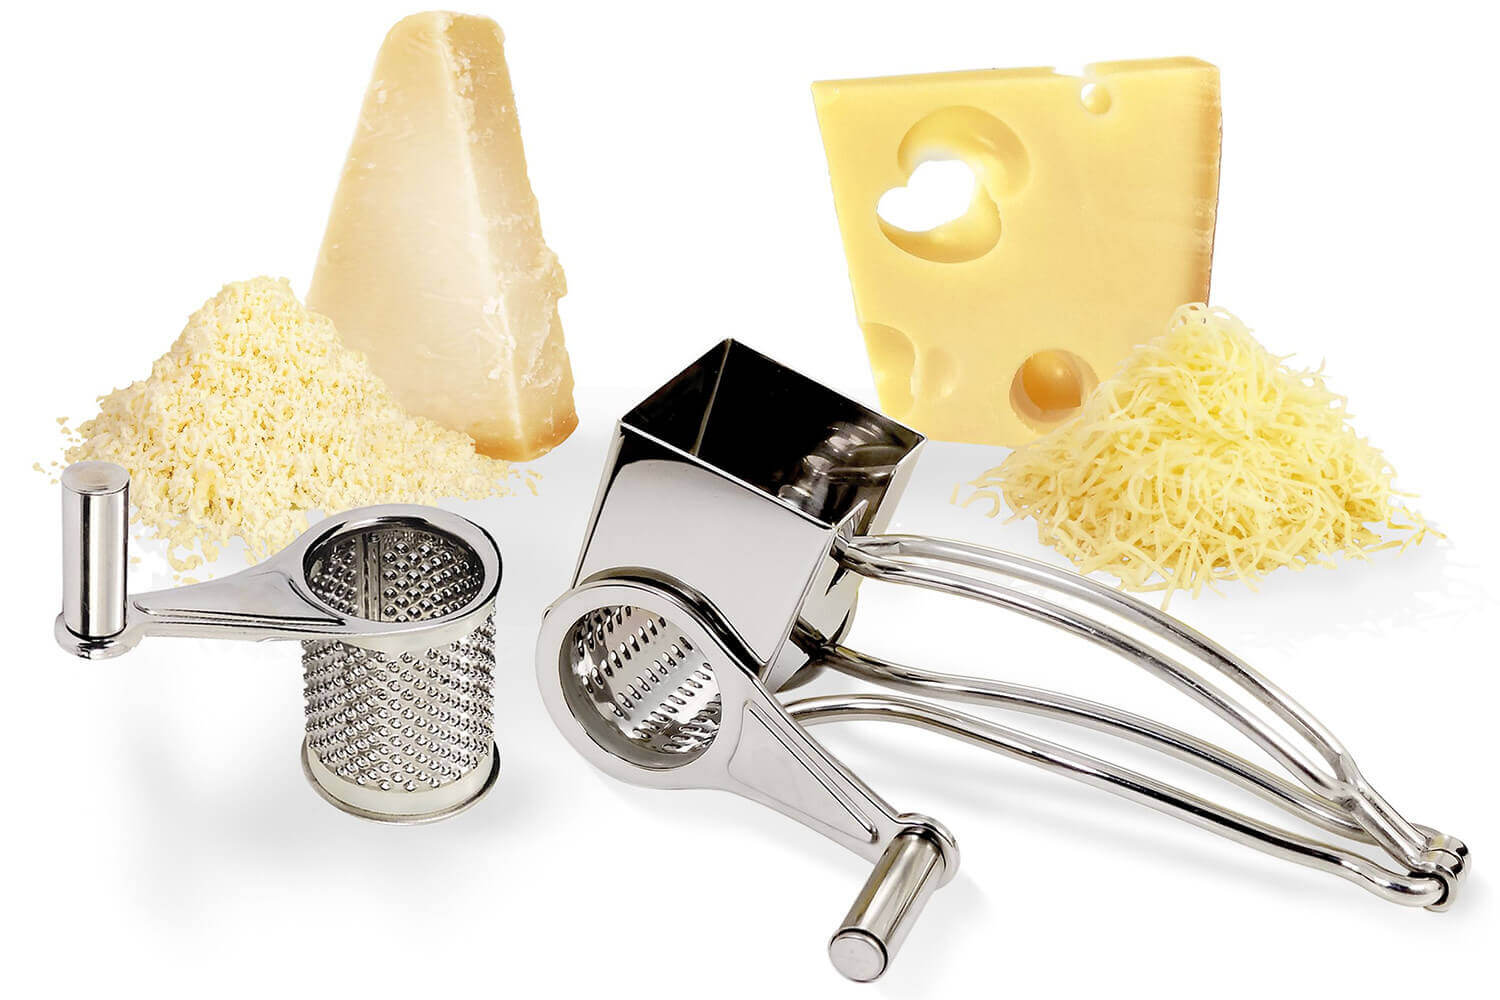 Râpe à fromage 4 tambours - Meilleur du Chef